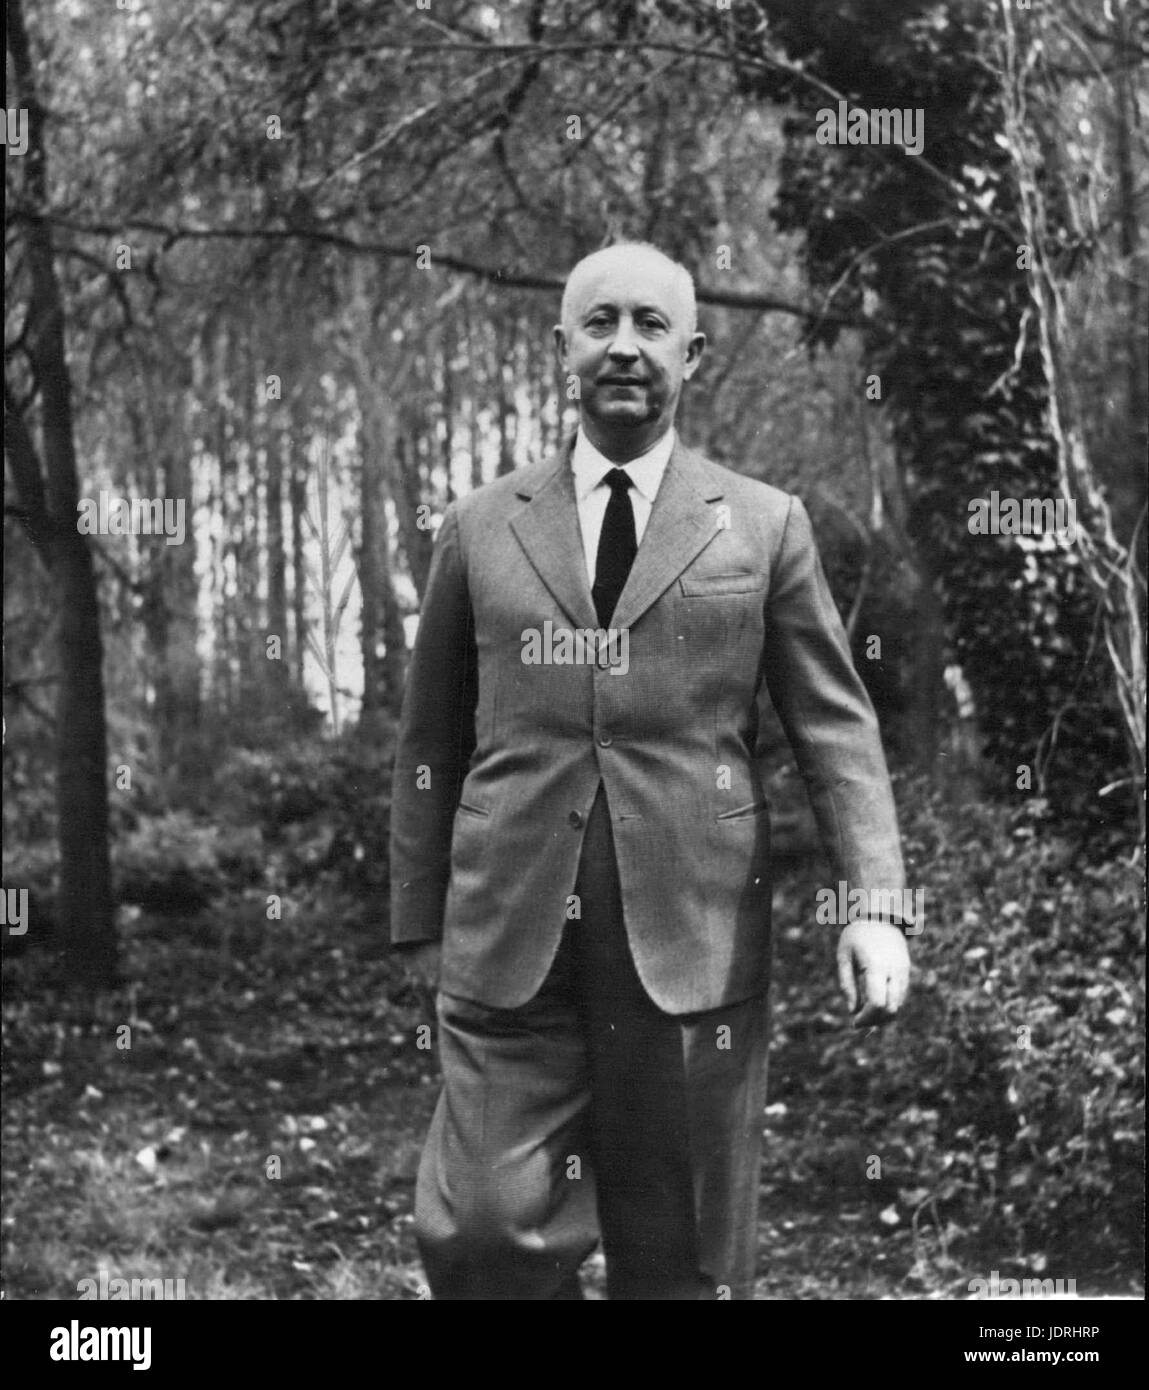 25. Oktober 1957 - starb der berühmte Modeschöpfer Christian Dior, gestern in Italien. Hier ist er bei einem Spaziergang im Wald abgebildet. (Kredit-Bild: © Keystone Presseagentur/Keystone USA über ZUMAPRESS.com) Stockfoto